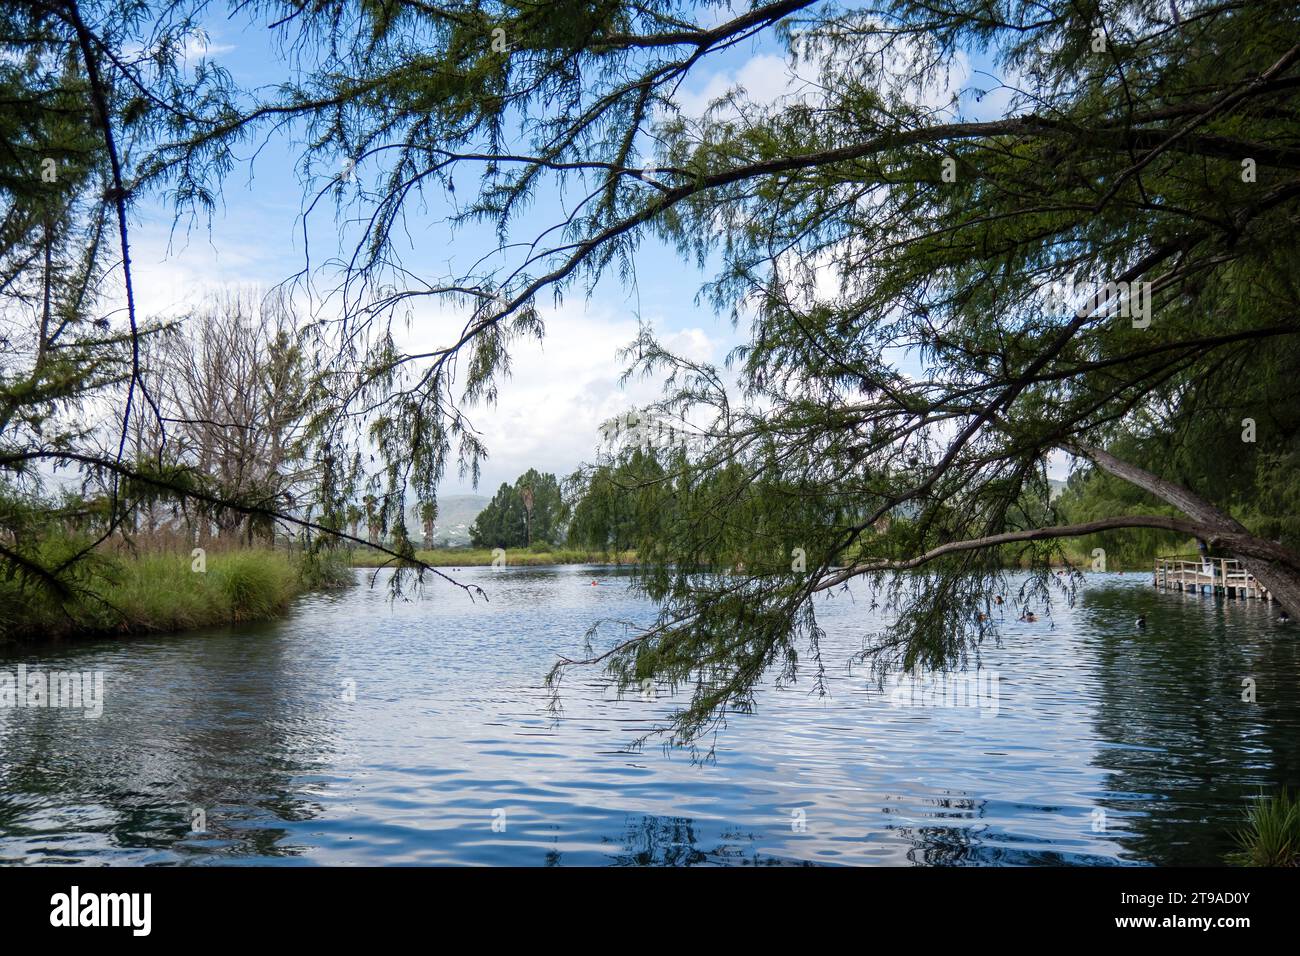 Scoprite l'incantevole paesaggio di Media Luna, caratterizzato da un lago sereno, foreste lussureggianti e tranquilli corsi d'acqua Foto Stock